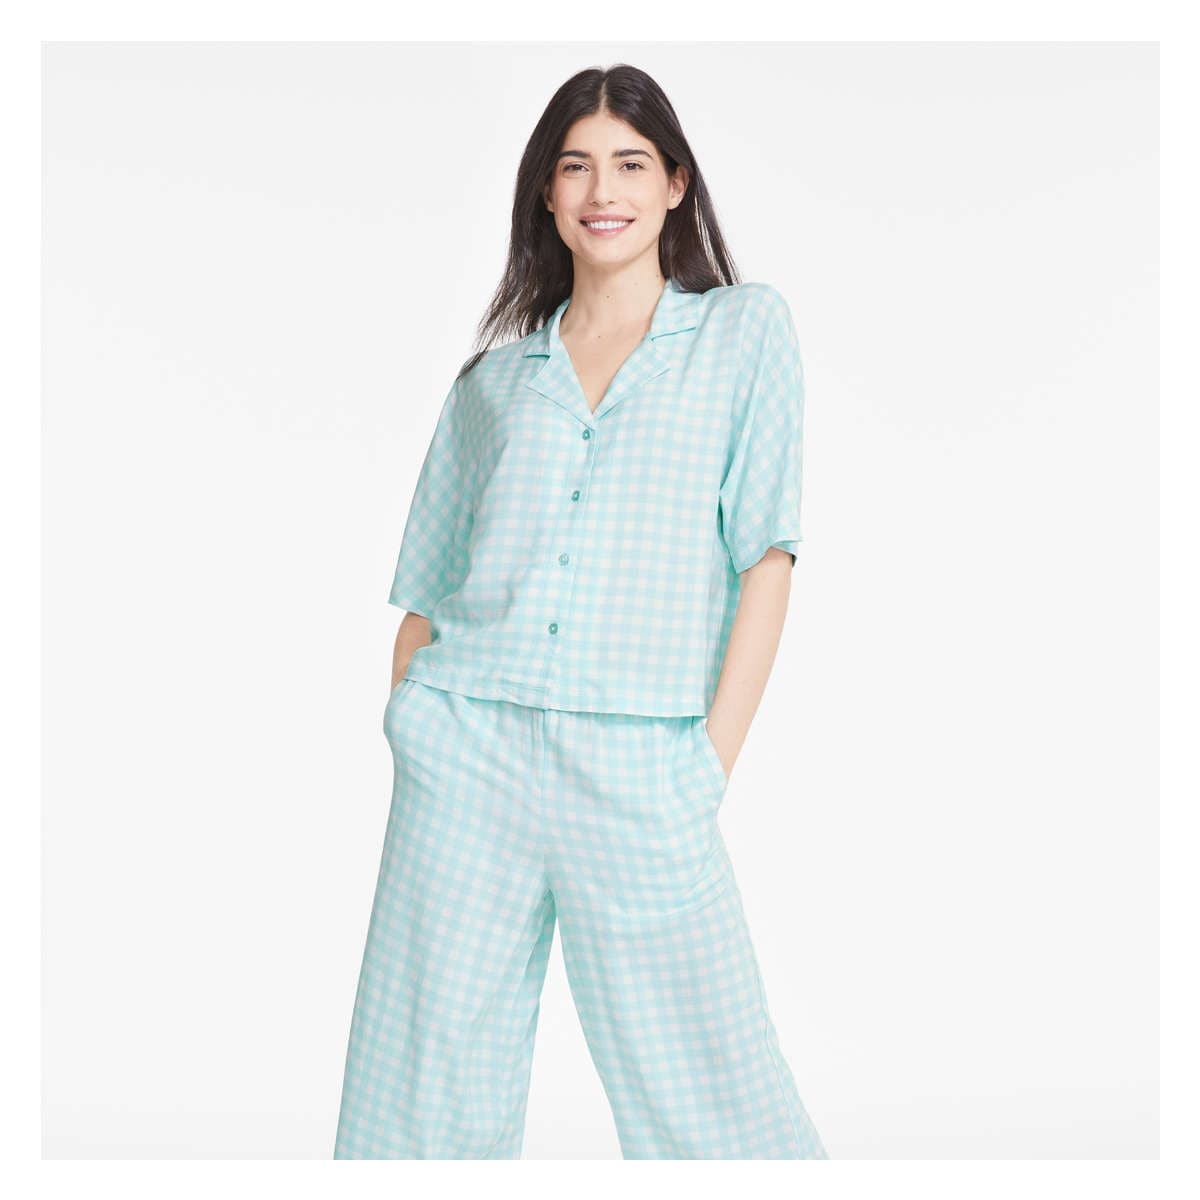 Crop Pajama Pant in Aqua from Joe Fresh